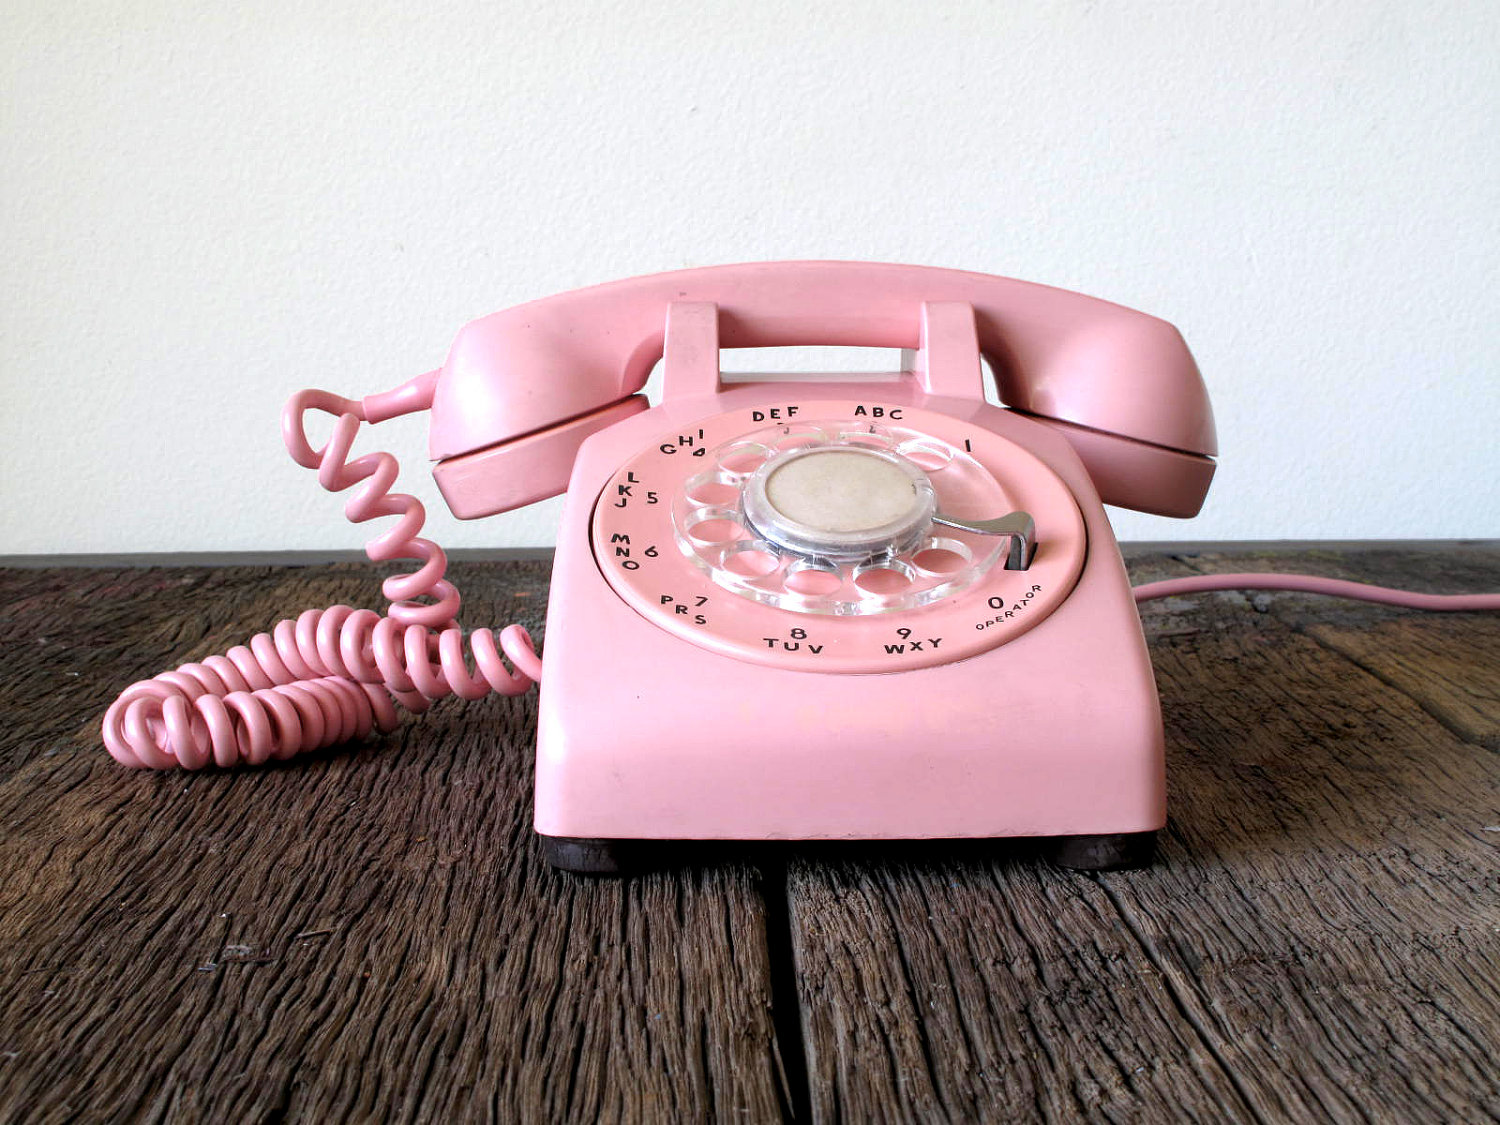 Купить розовый телефон. Розовый телефон. Домашний телефон розовый. Розовый мобильник. Ретро домашний телефон розового цвета.